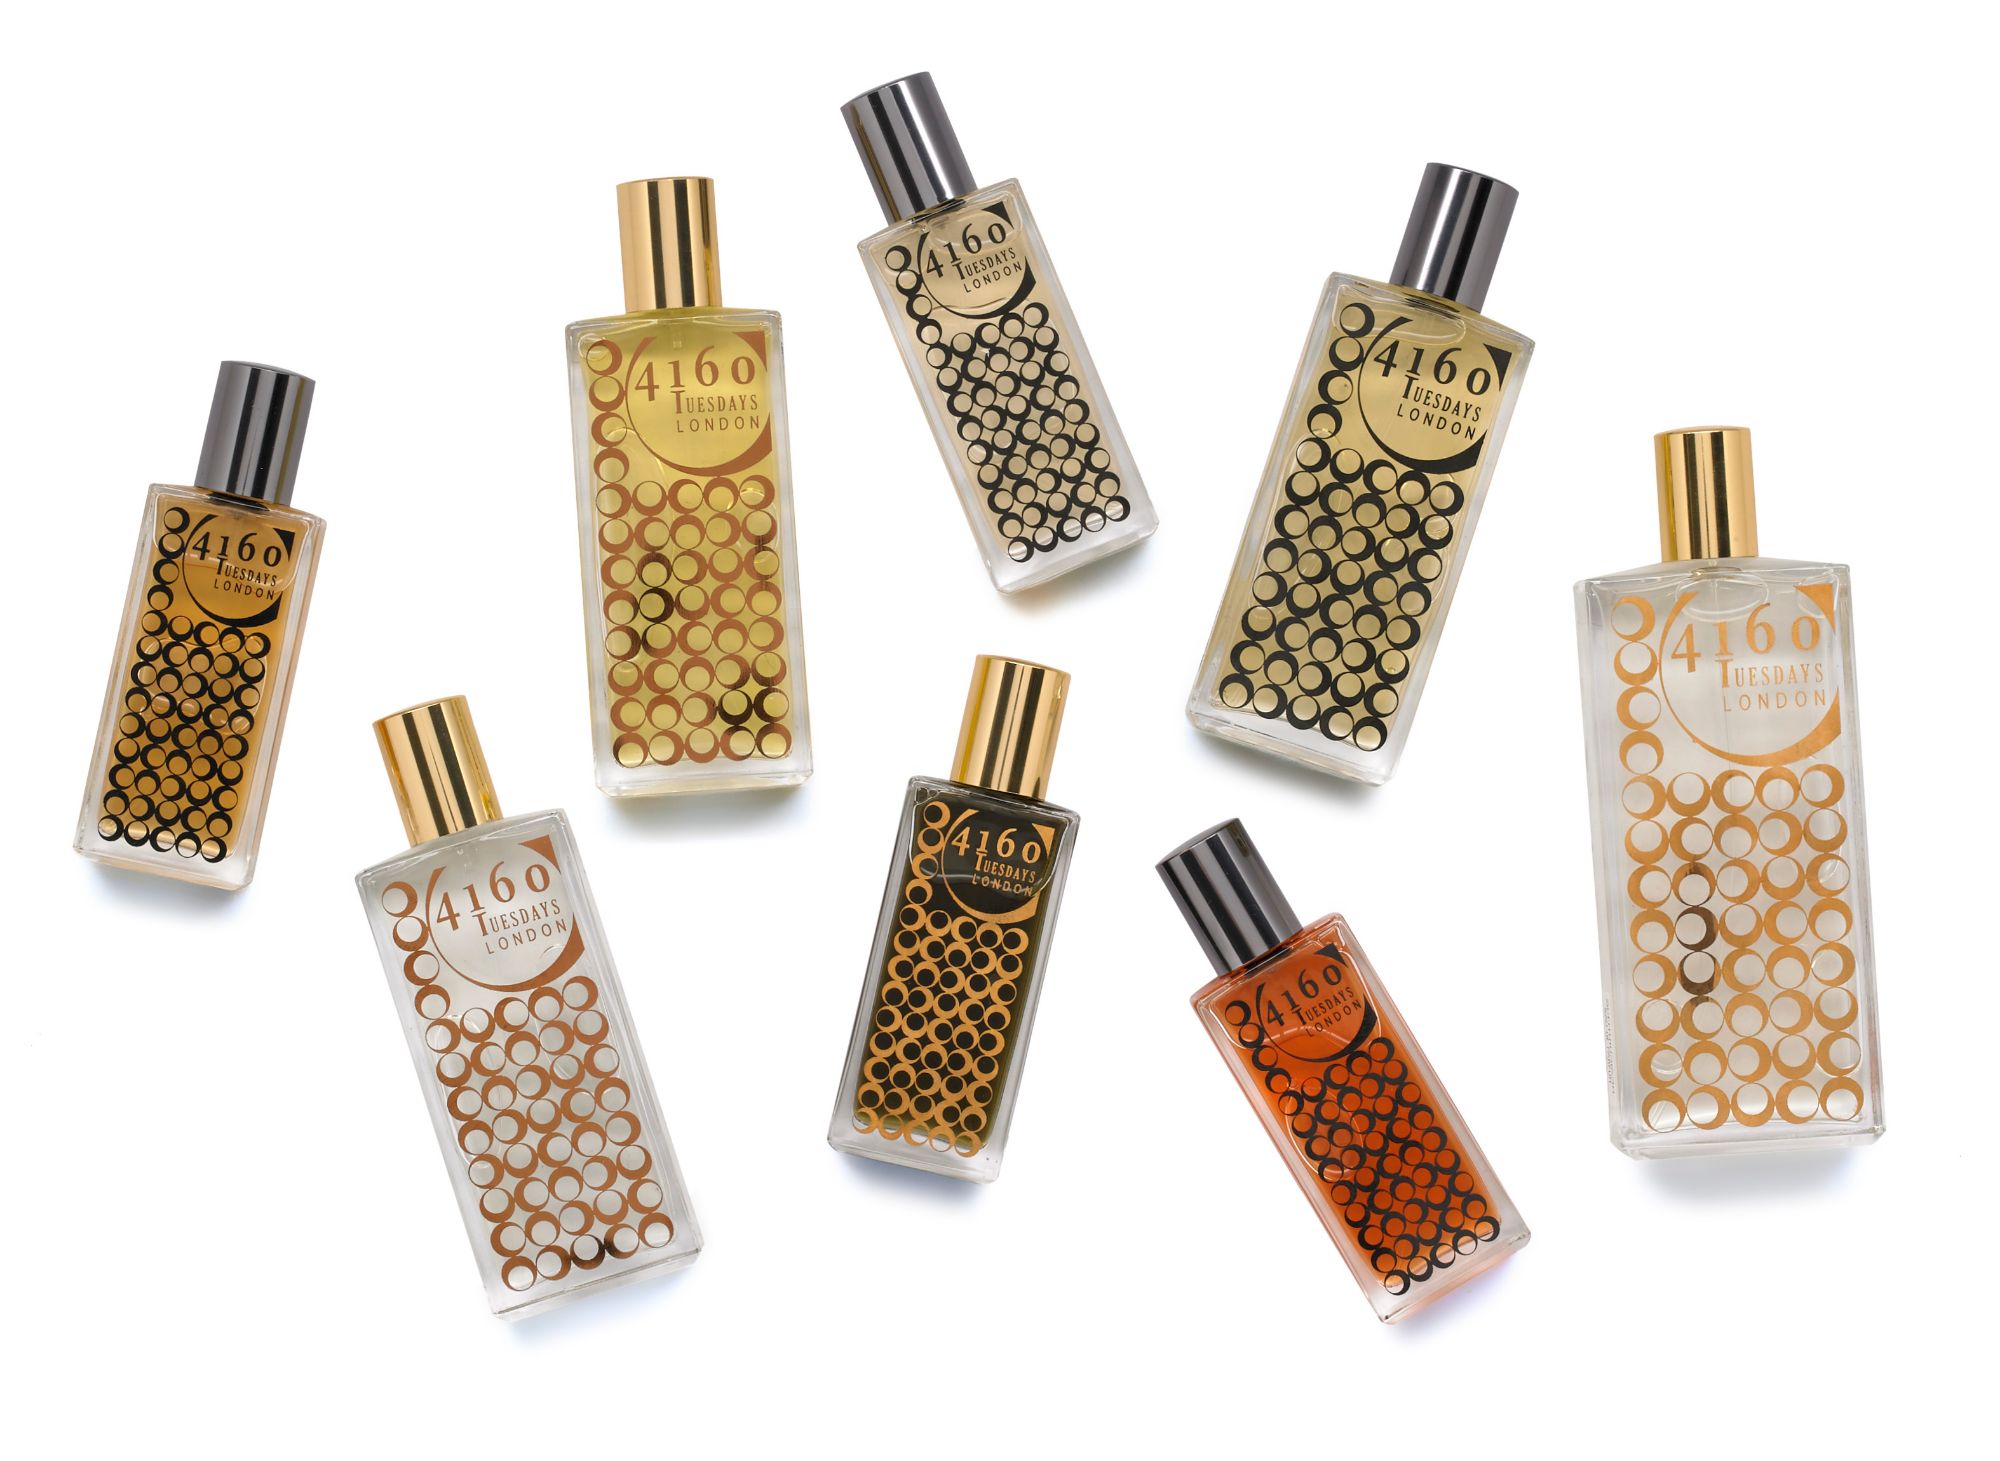 Stylised shot of bottles of perfume